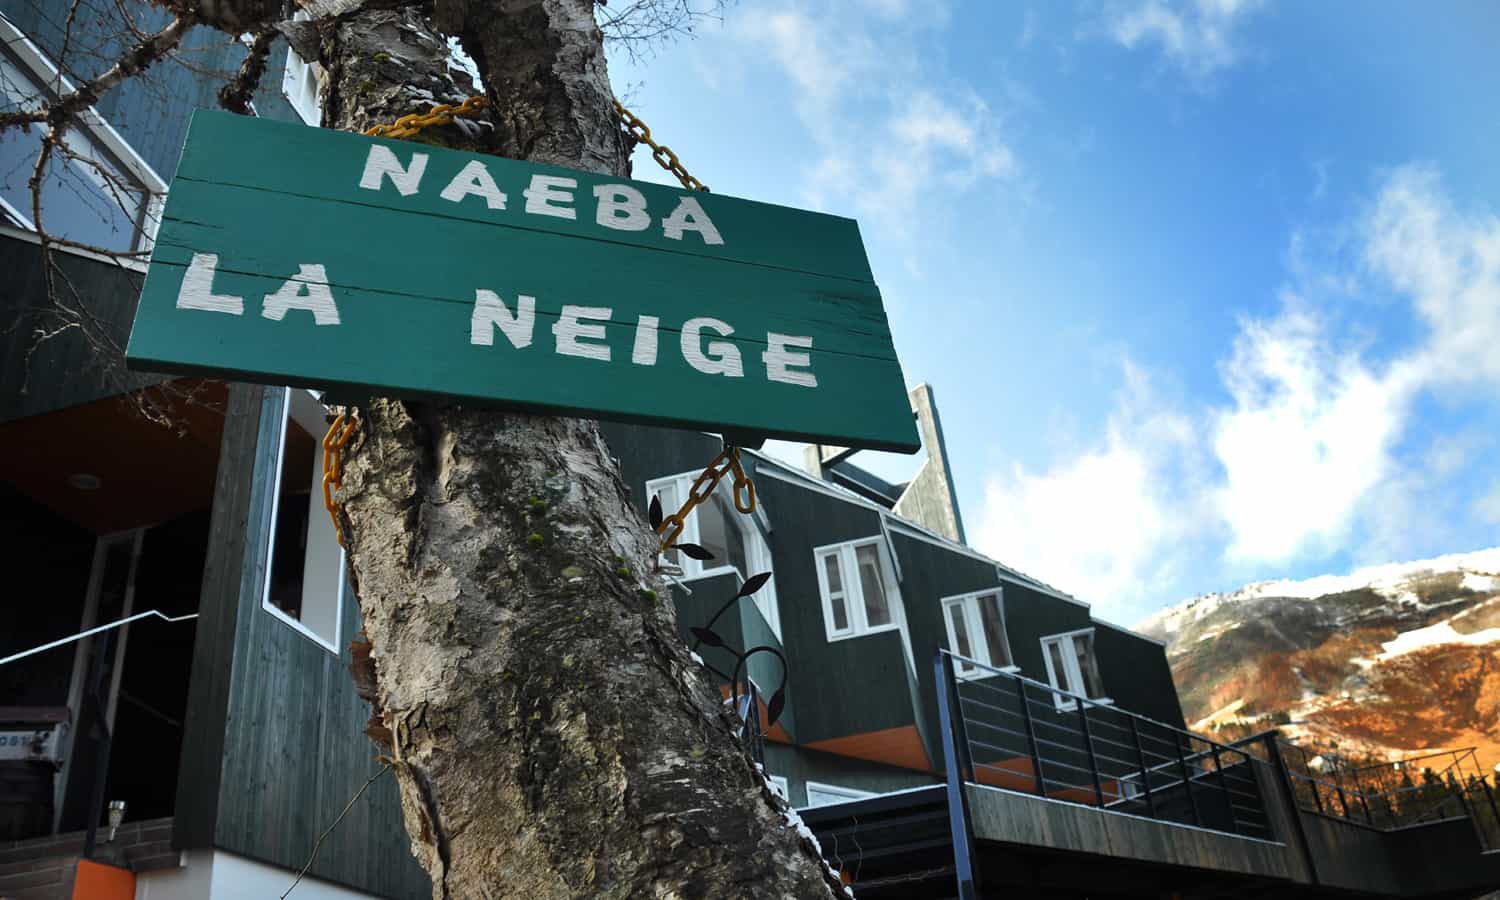 Naeba La Neige